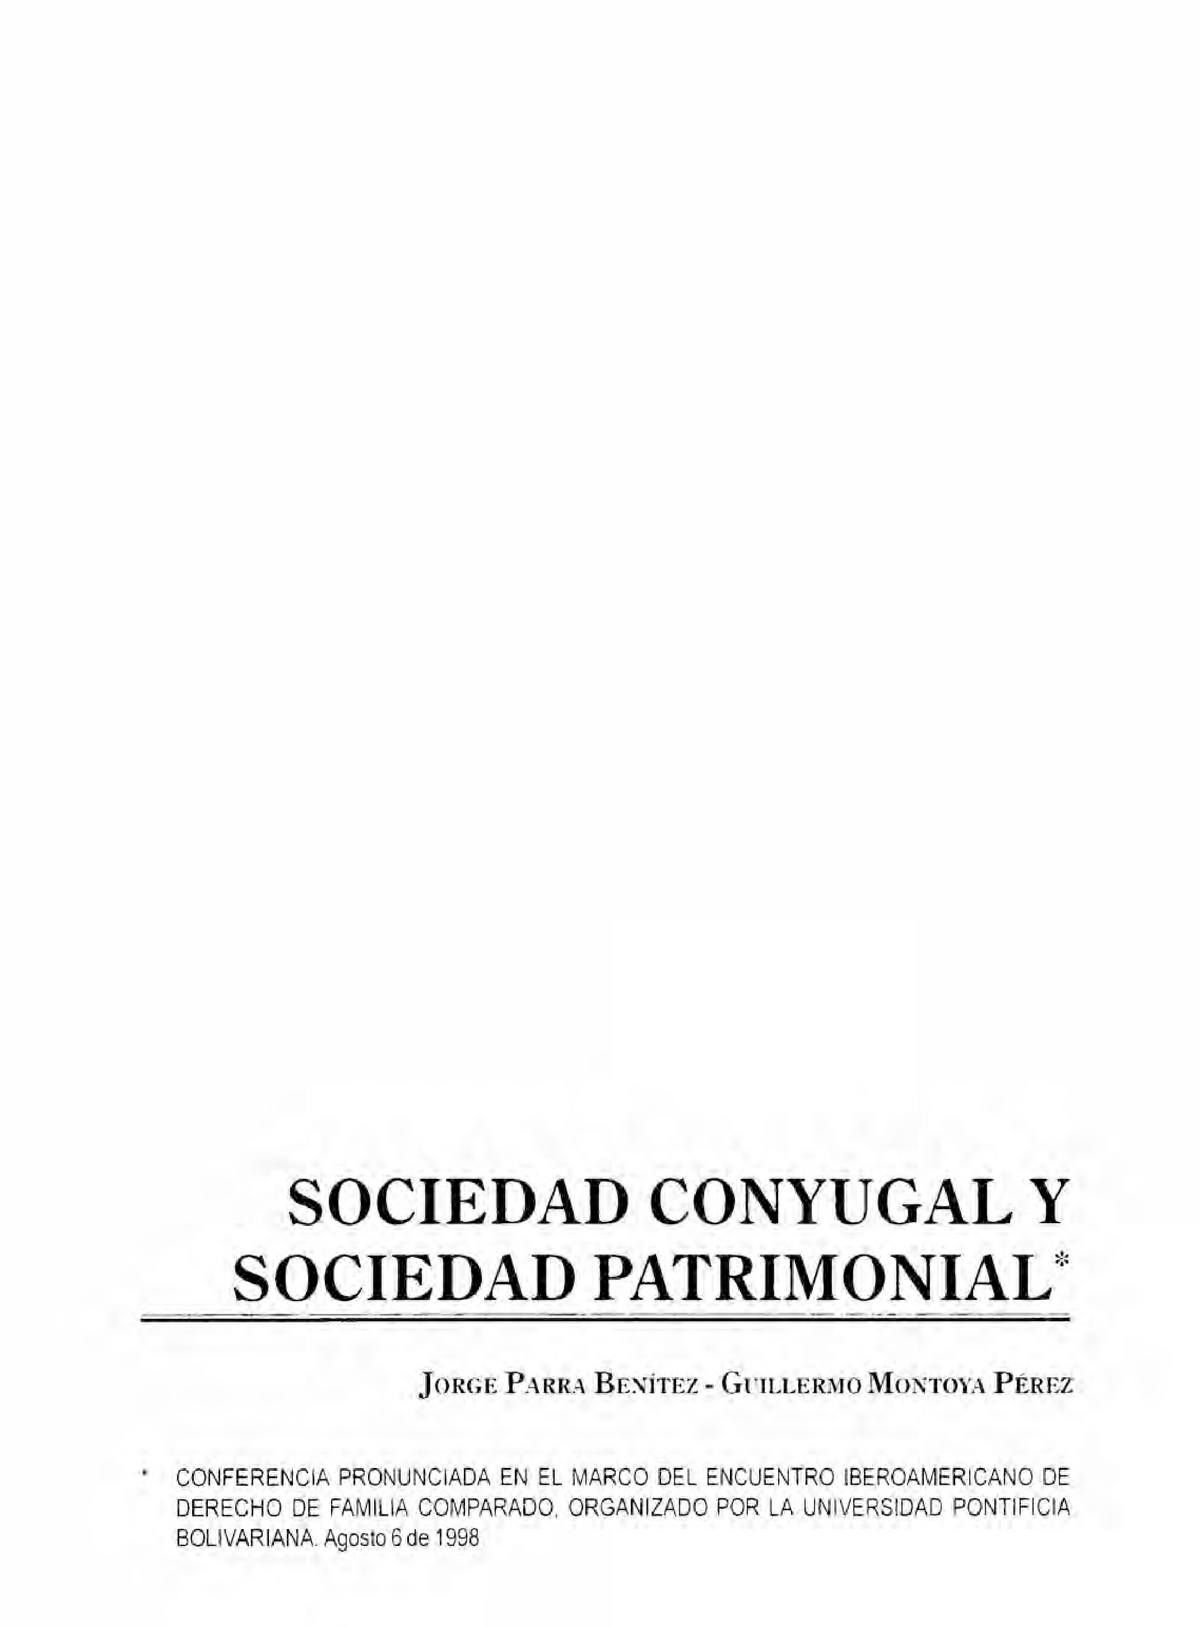 Sobre La Sociedad Conyugal Y Sociedad Patrimonial Sociedad Conyugal Y Sociedad Patrimonial 0727